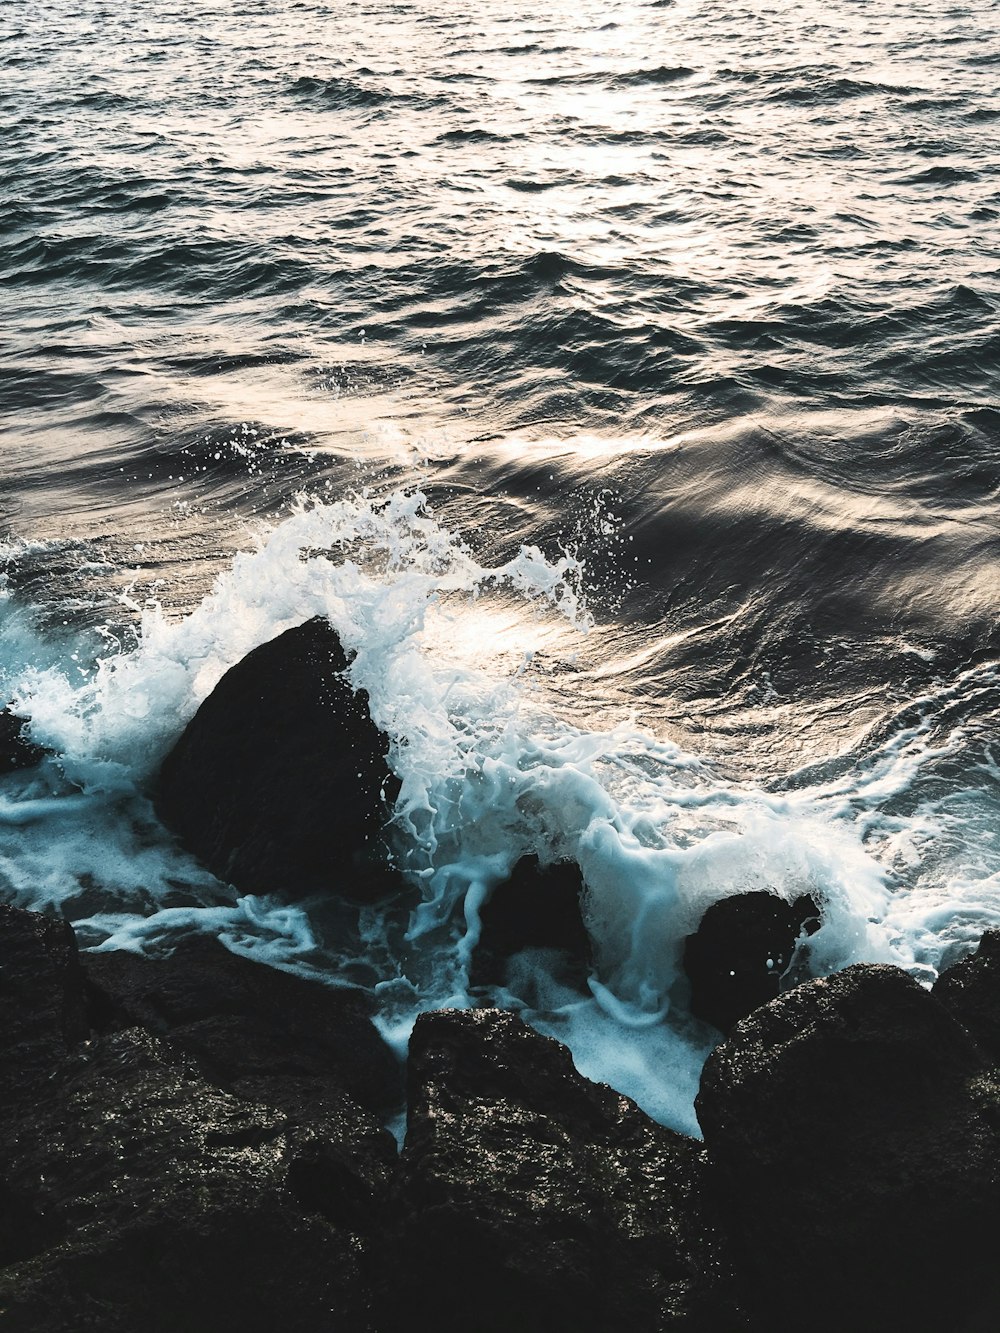 photo of ocean waves